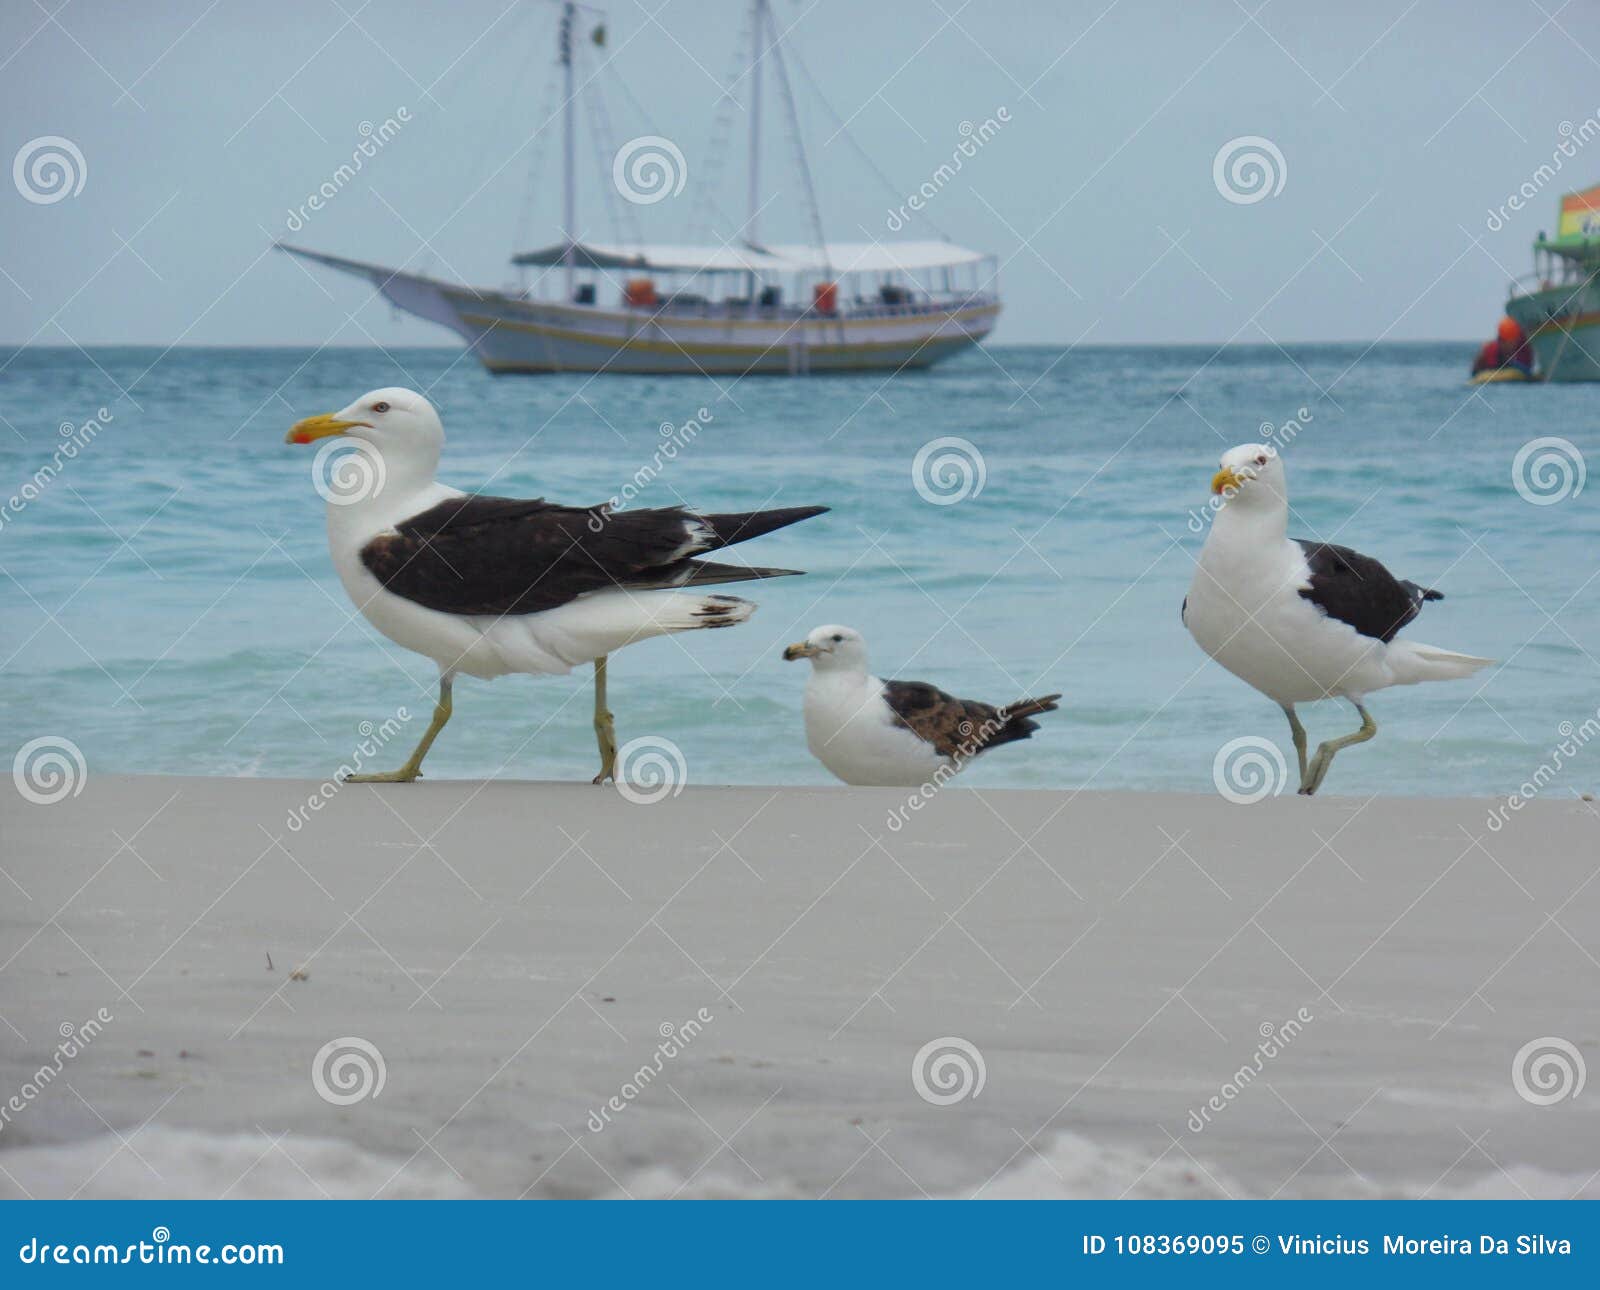 seagull stand on the sand, prainhas do pontal beach, arraial do cabo